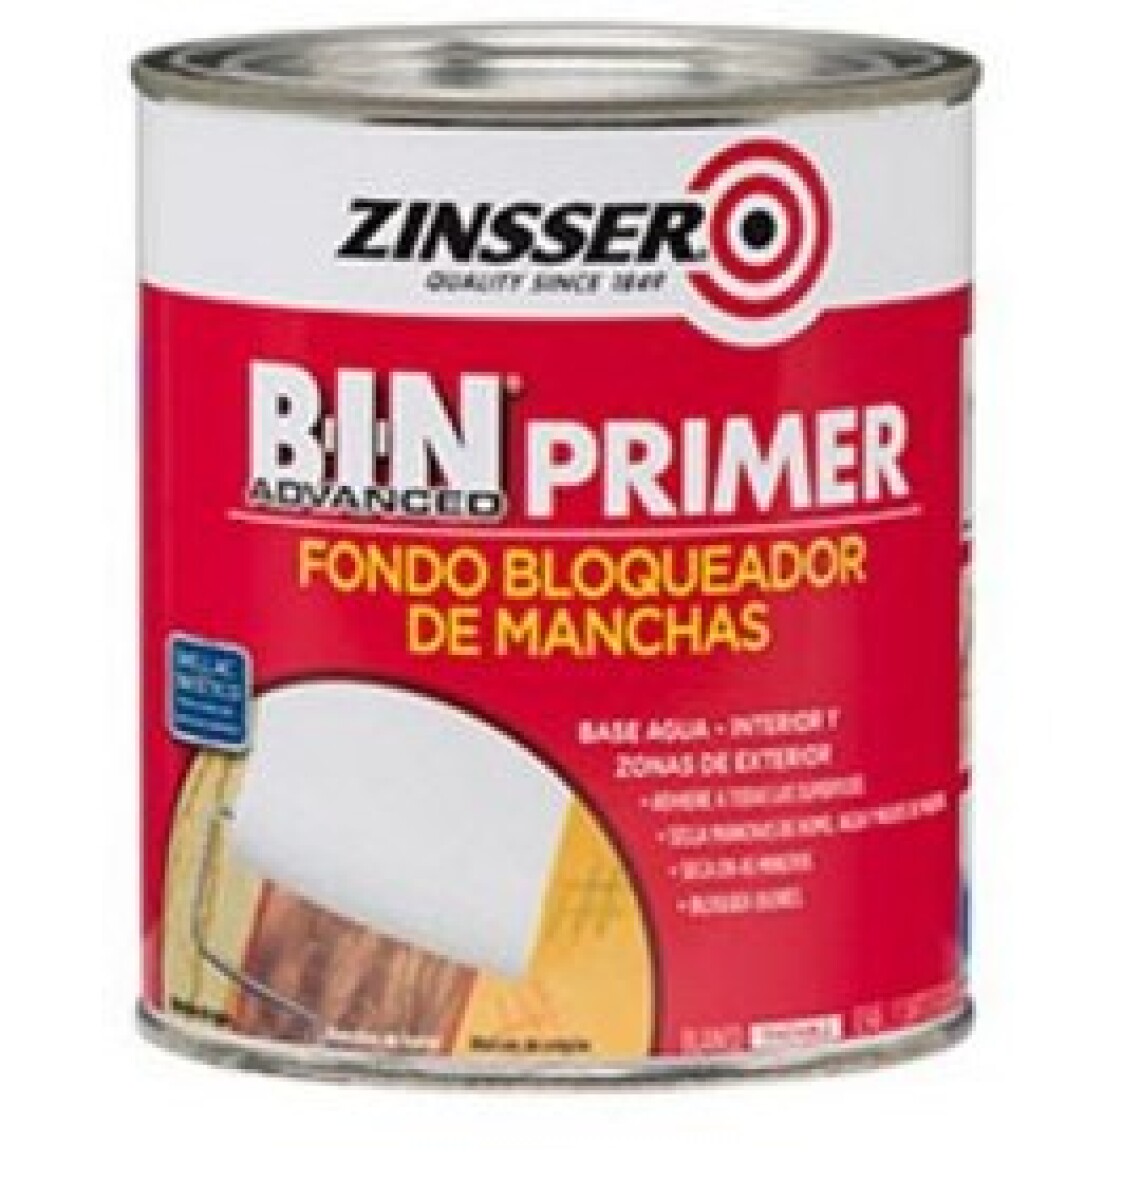 ZINSSER BIN PRIMER 3.785 LTS 